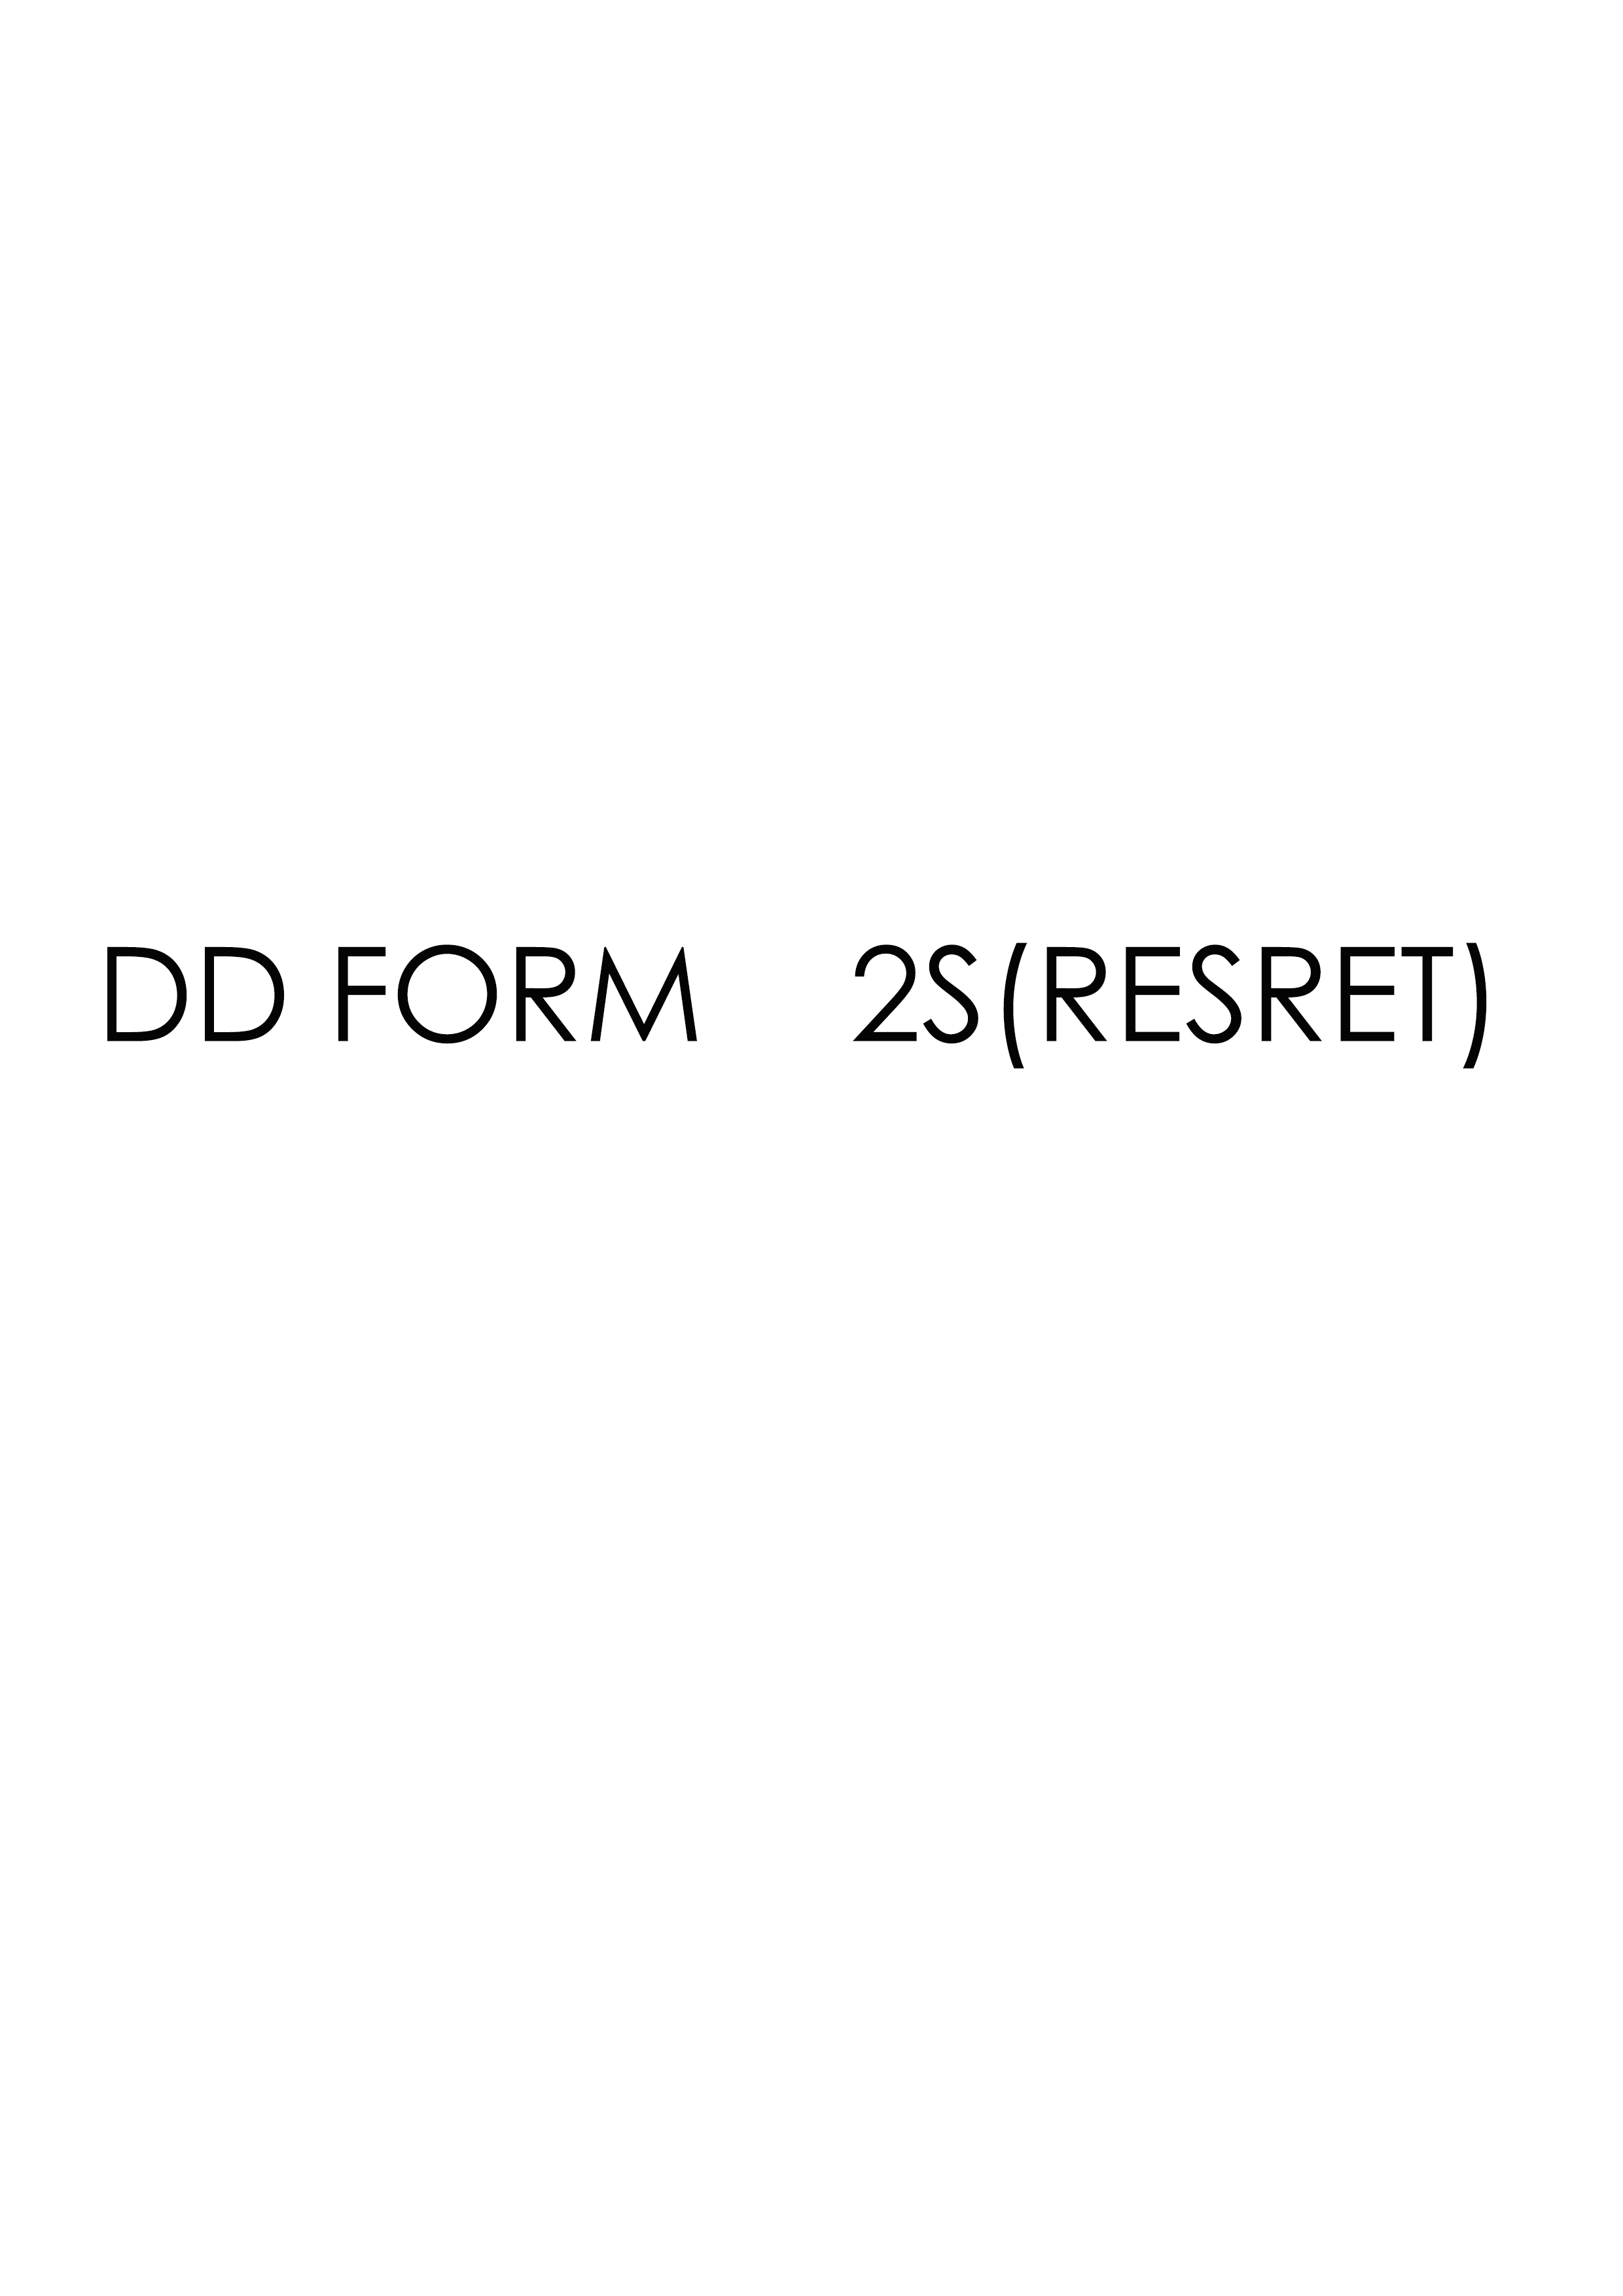 Download dd 2S(RESRET) Form